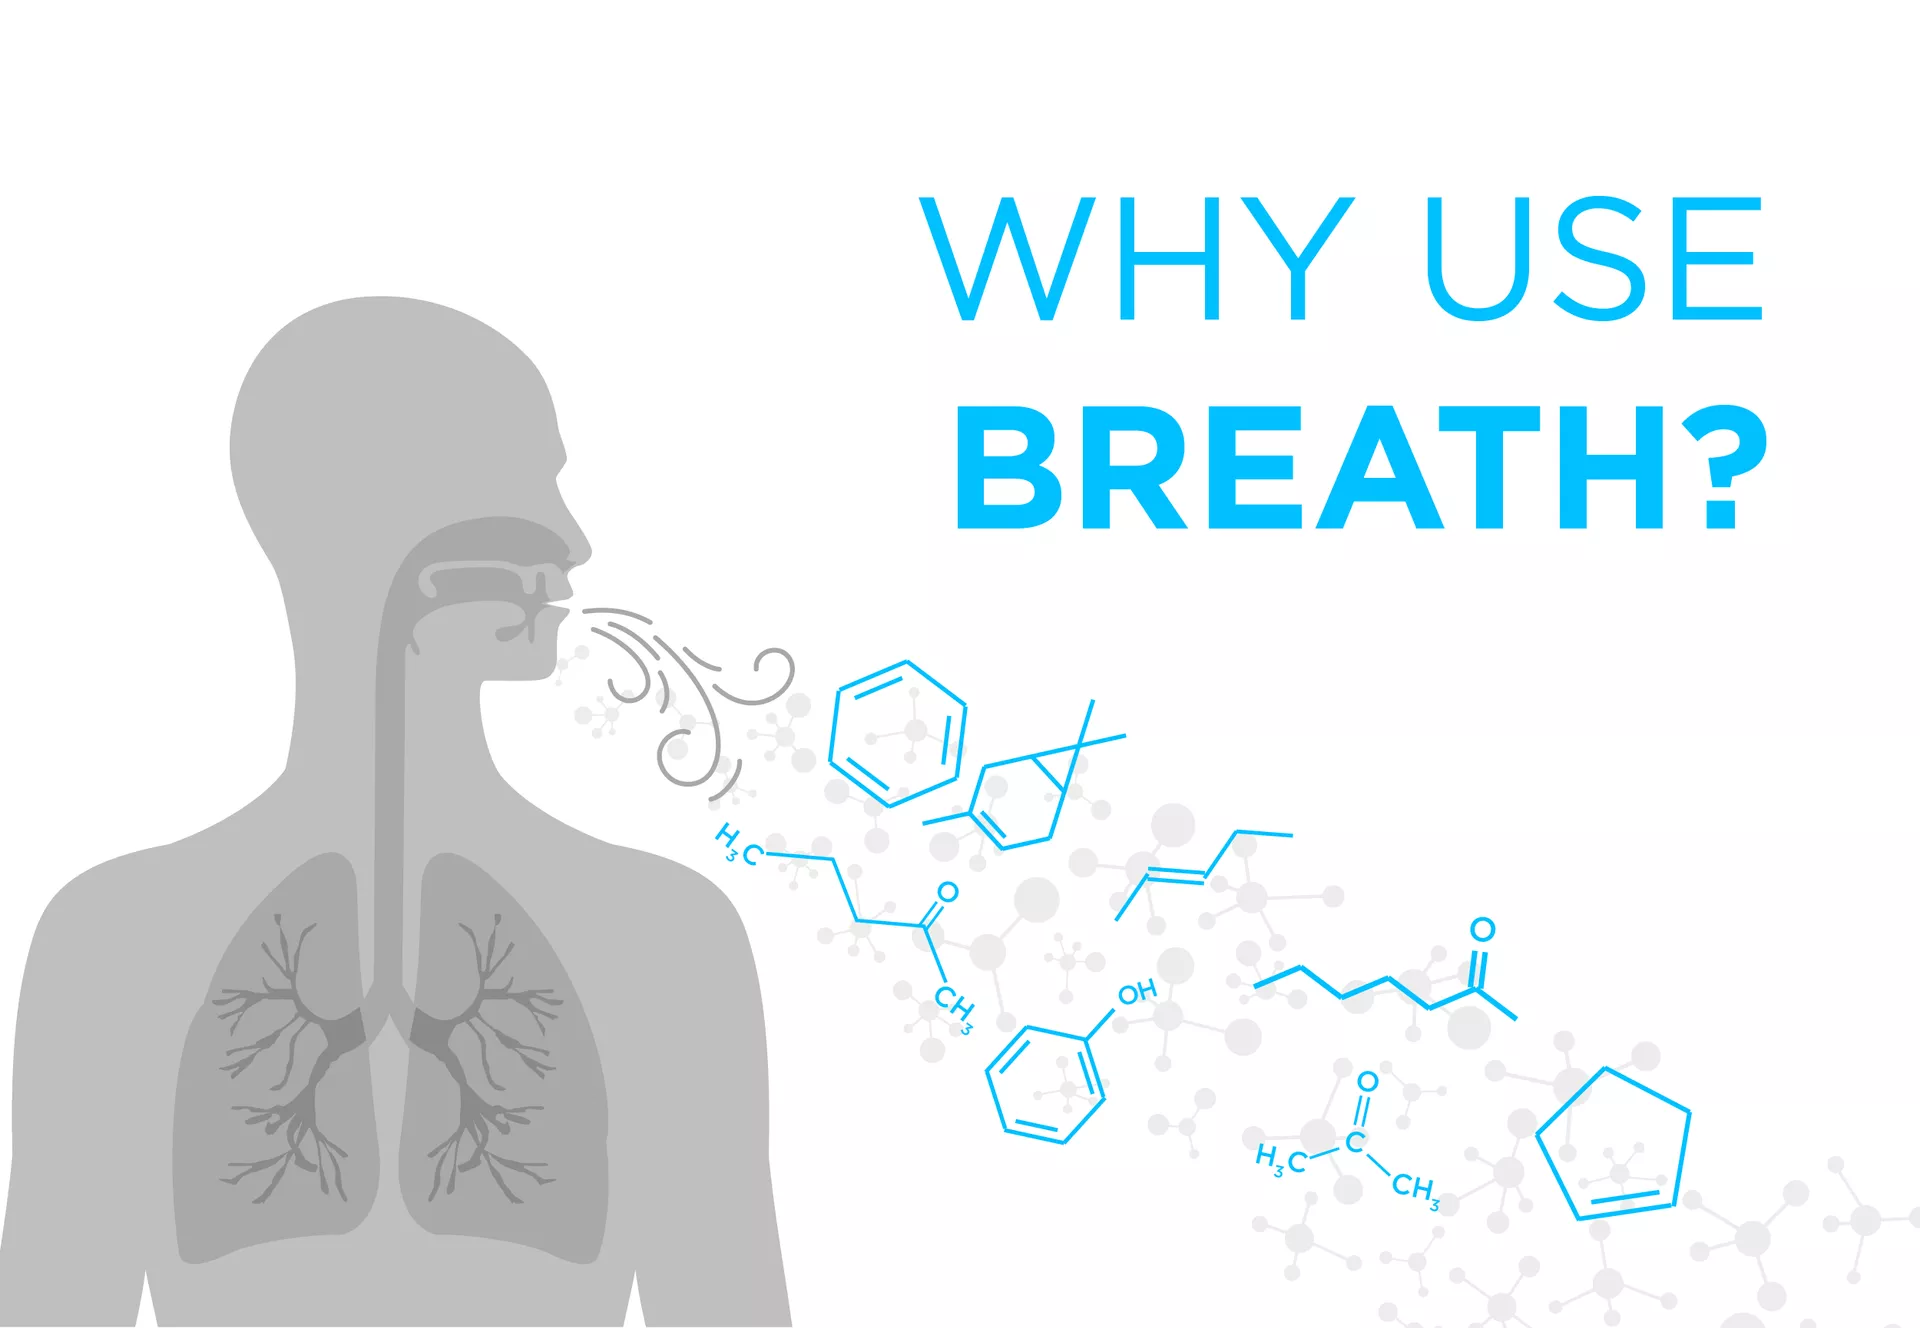 Why use breath?